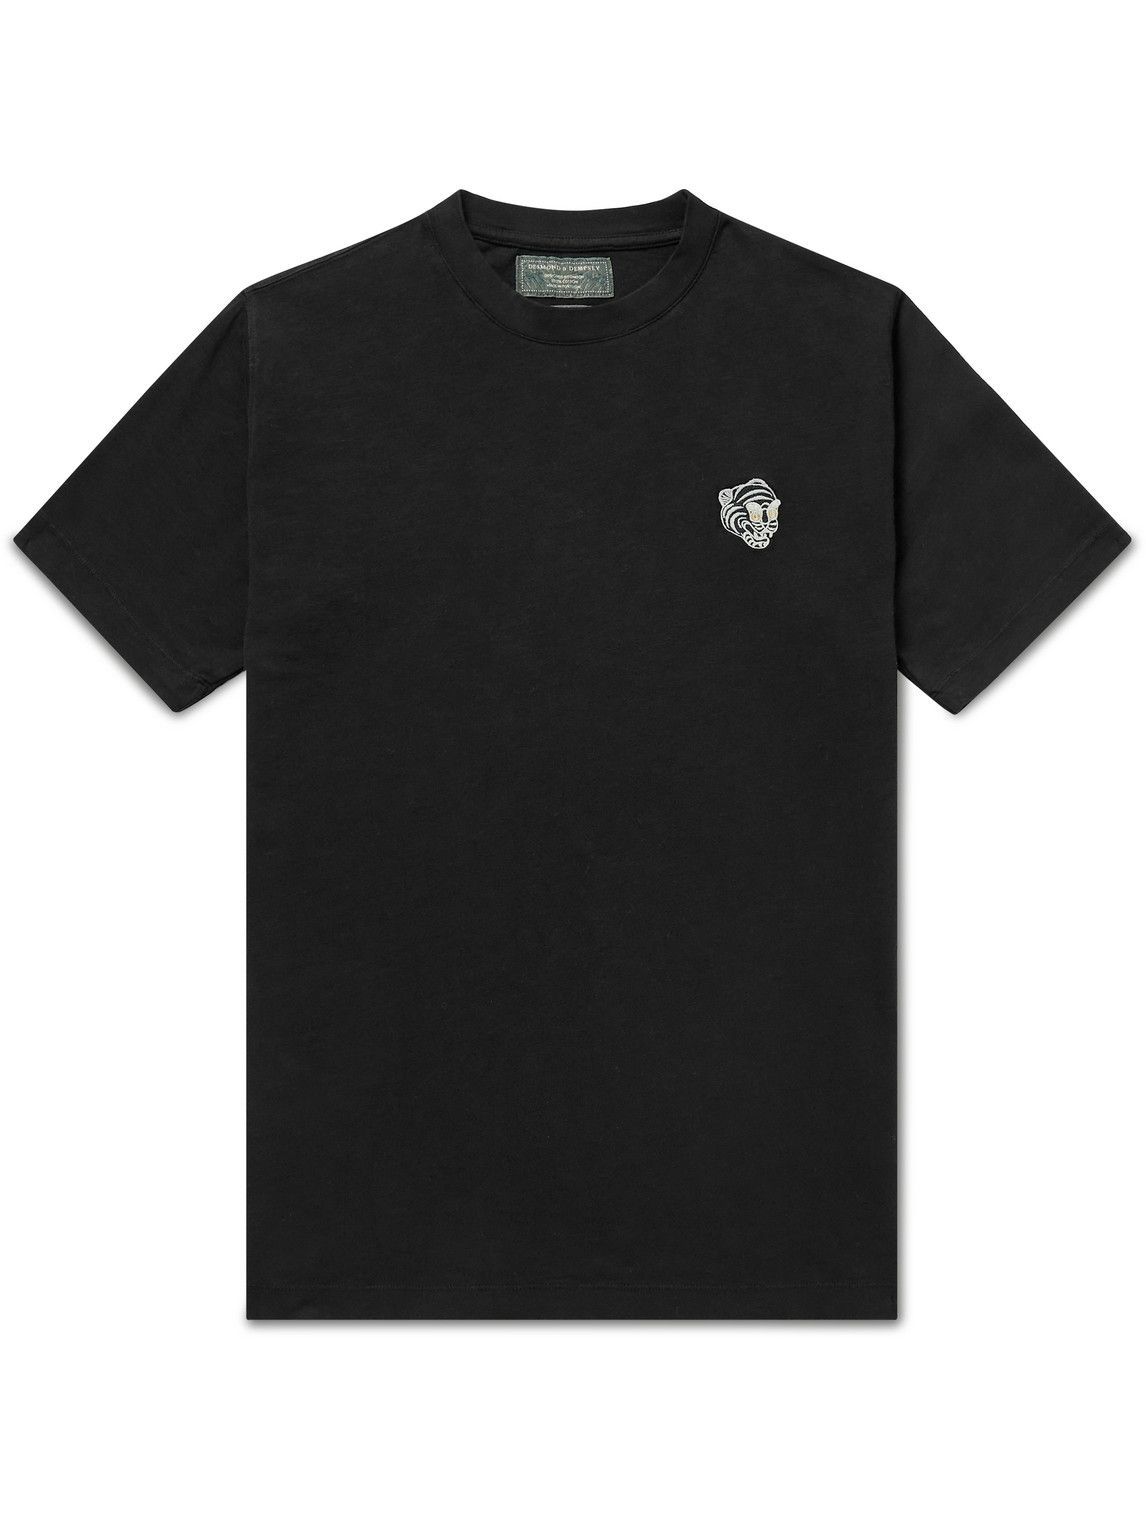 Desmond & Dempsey - Embroidered Cotton-Jersey T-Shirt - Black Desmond ...